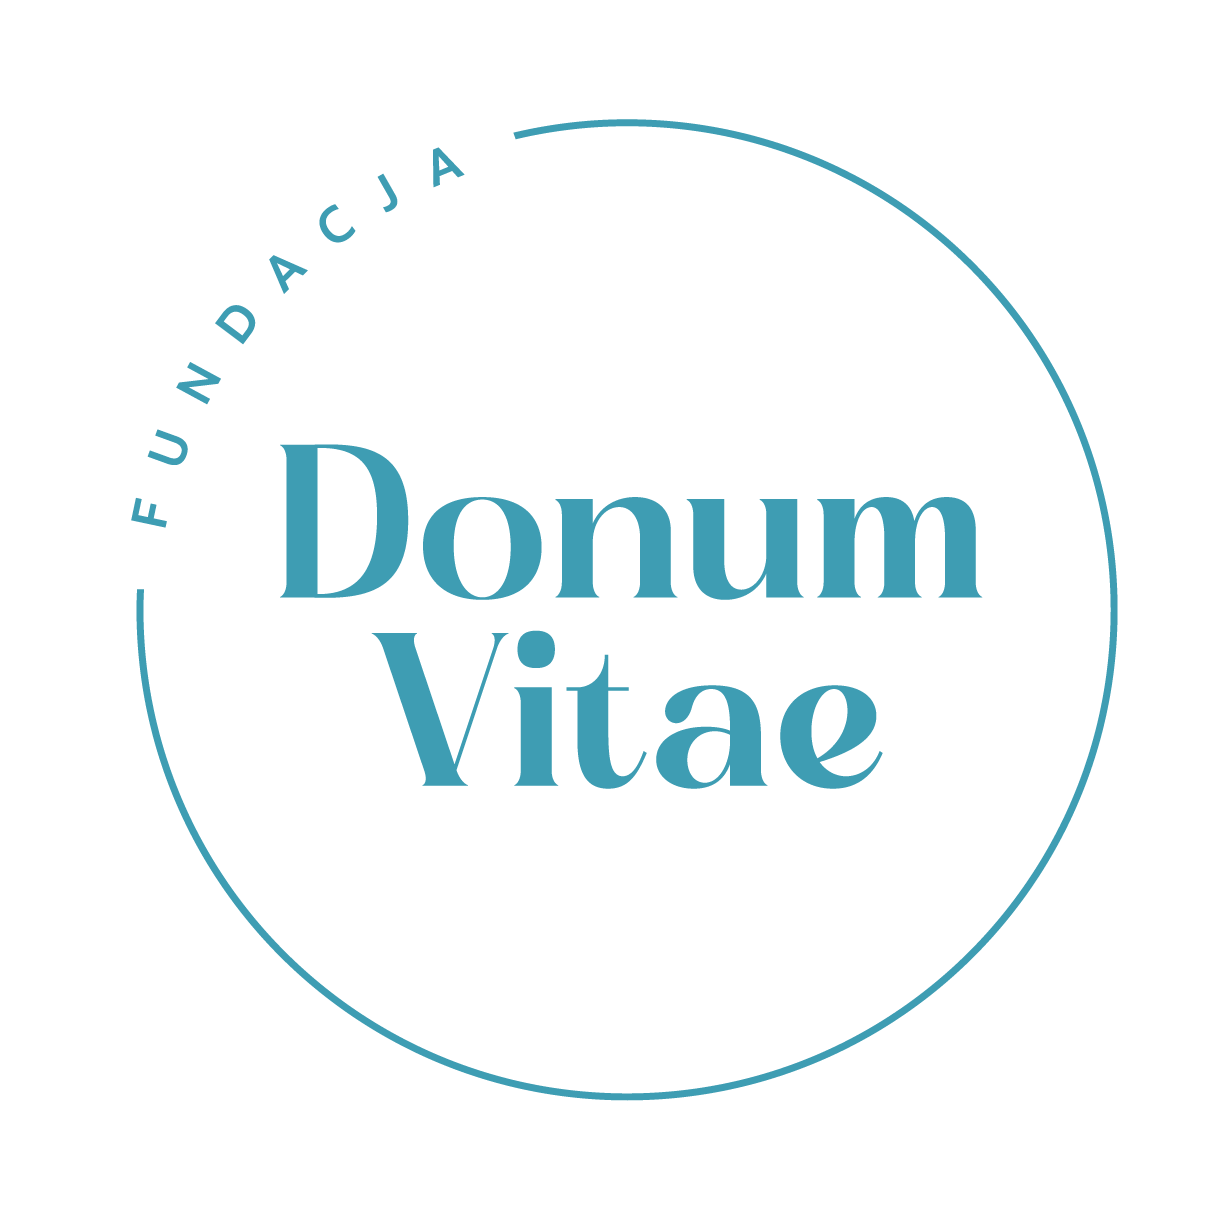 Fundacja Donum Vitae